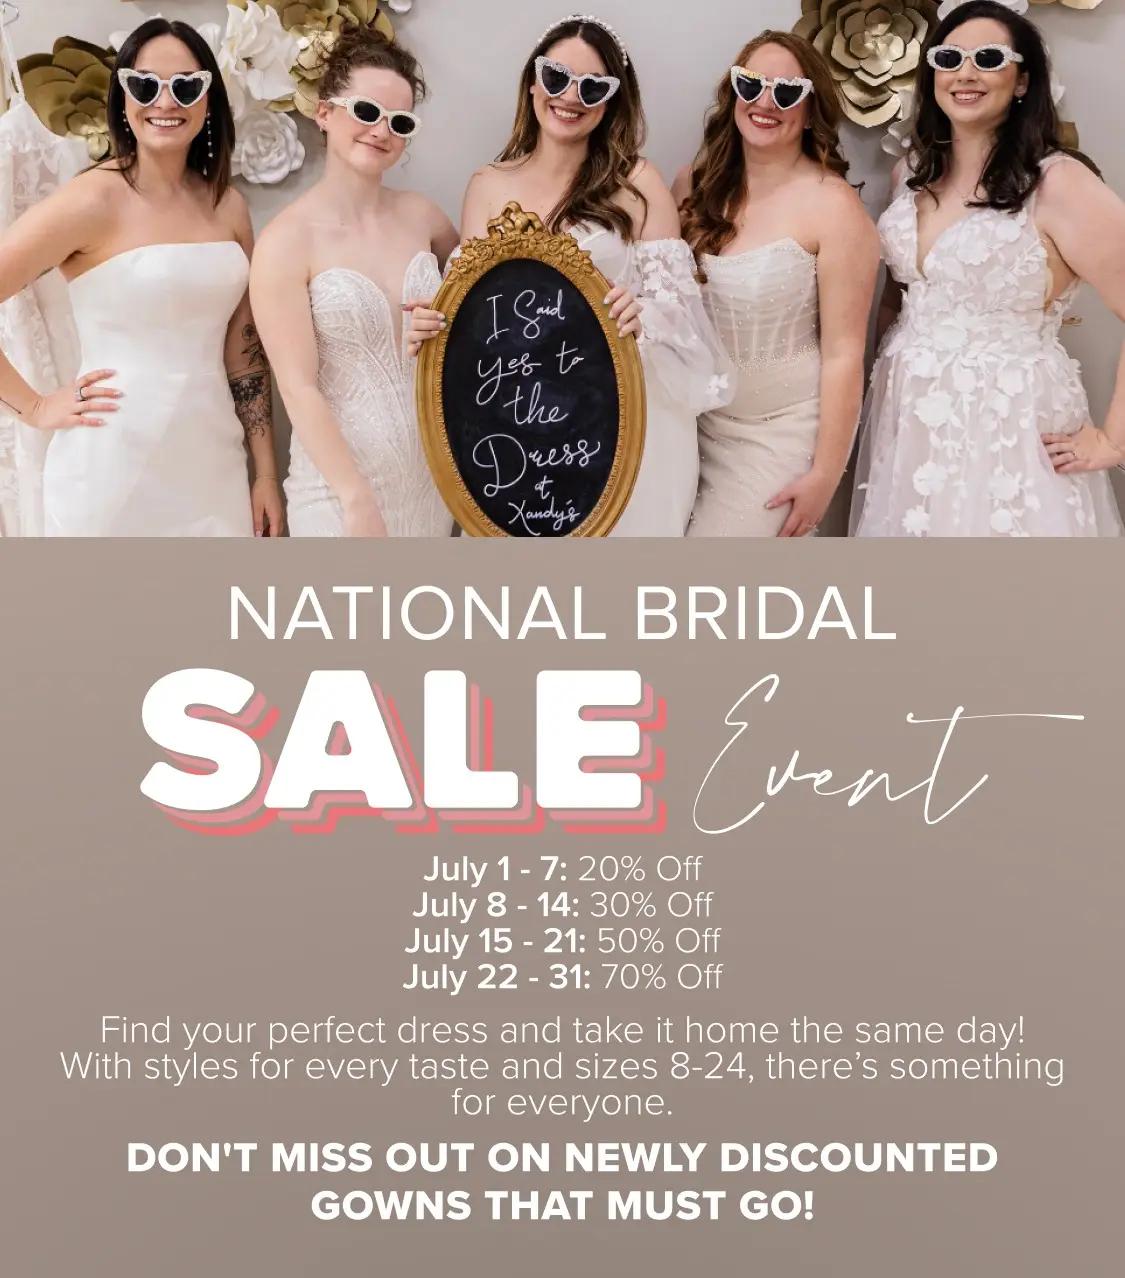 National Bridal Sale Mobile Banner